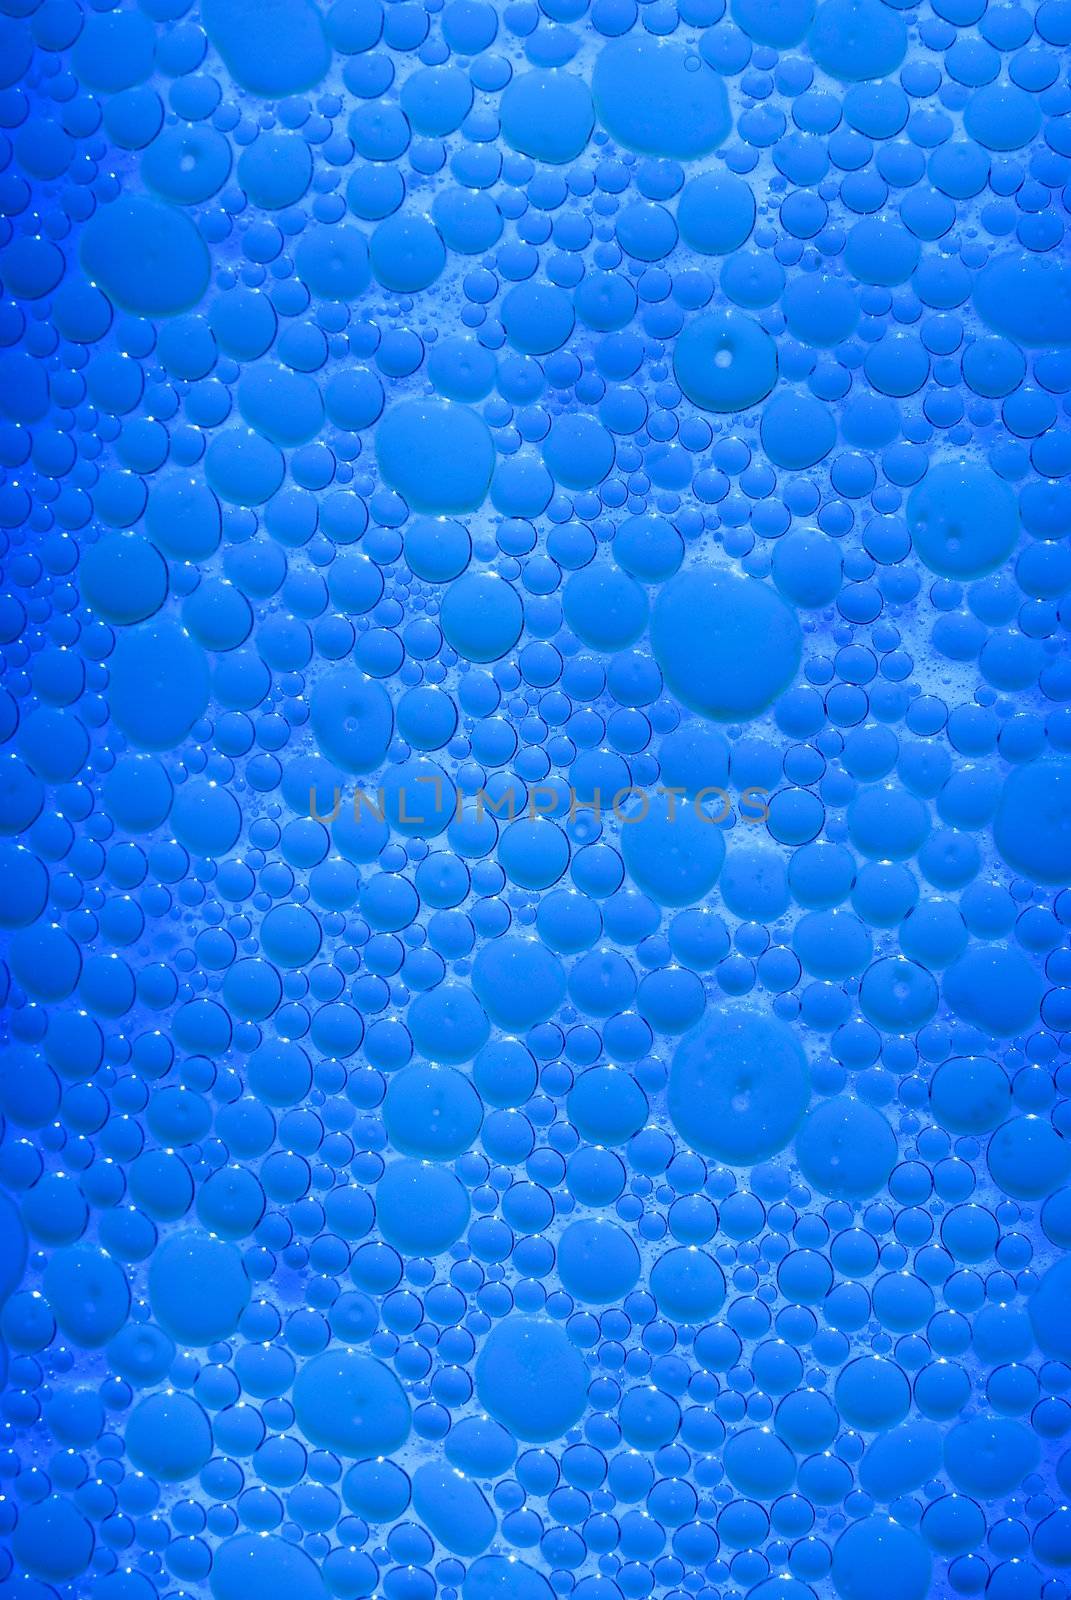 bubble background by makspogonii